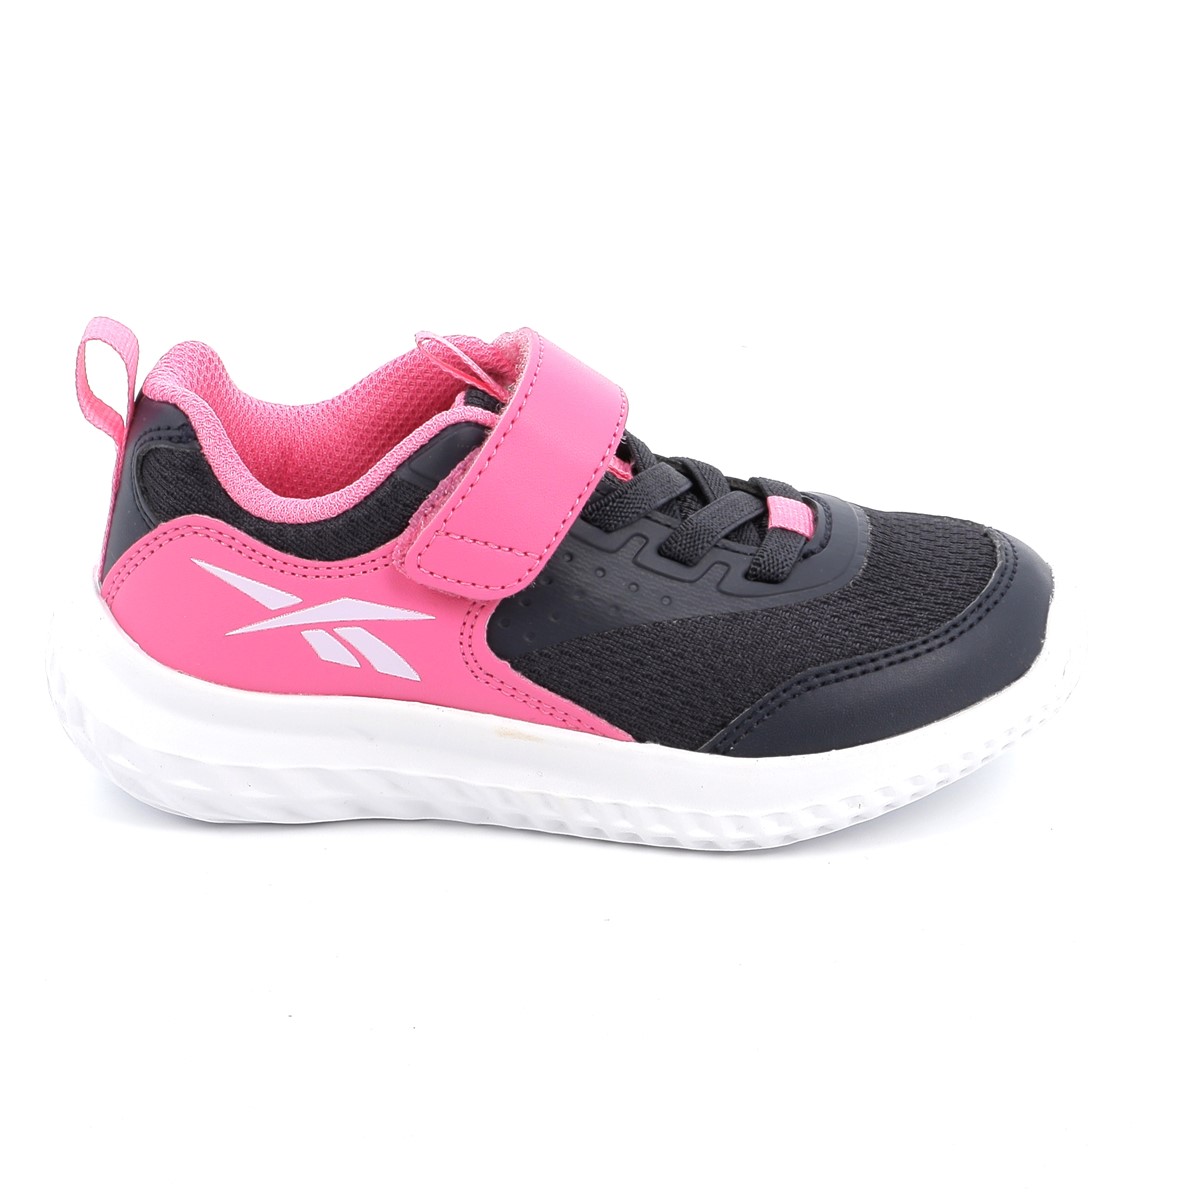 Παιδικό Αθλητικό Παπούτσι για Κορίτσι Reebok Rush Runner 4 0al Χρώματος Ροζ HP4787 - REEBOK - 